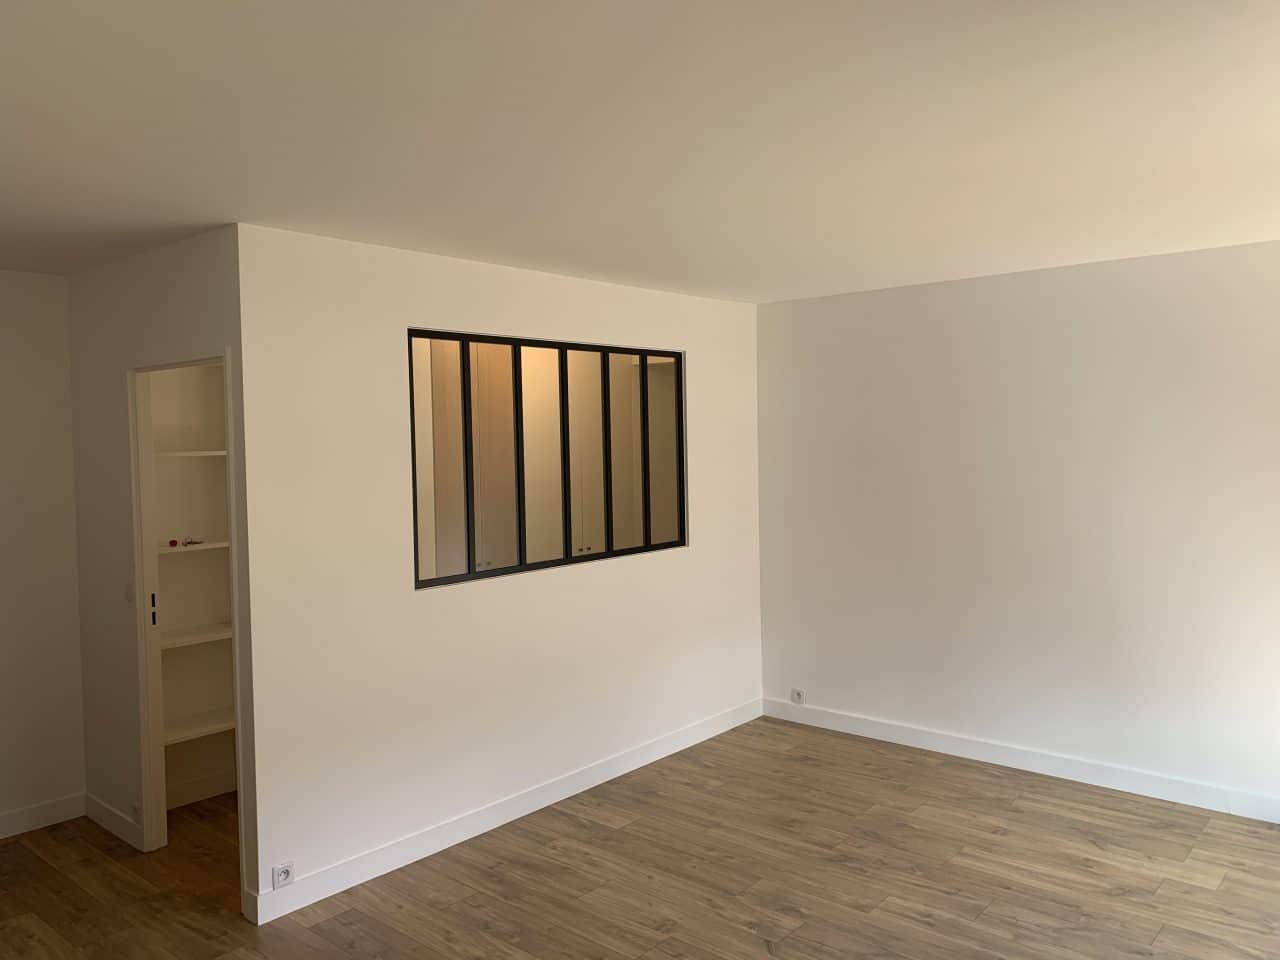 Rénovation complète d’un appartement à Rueil-Malmaison (92)